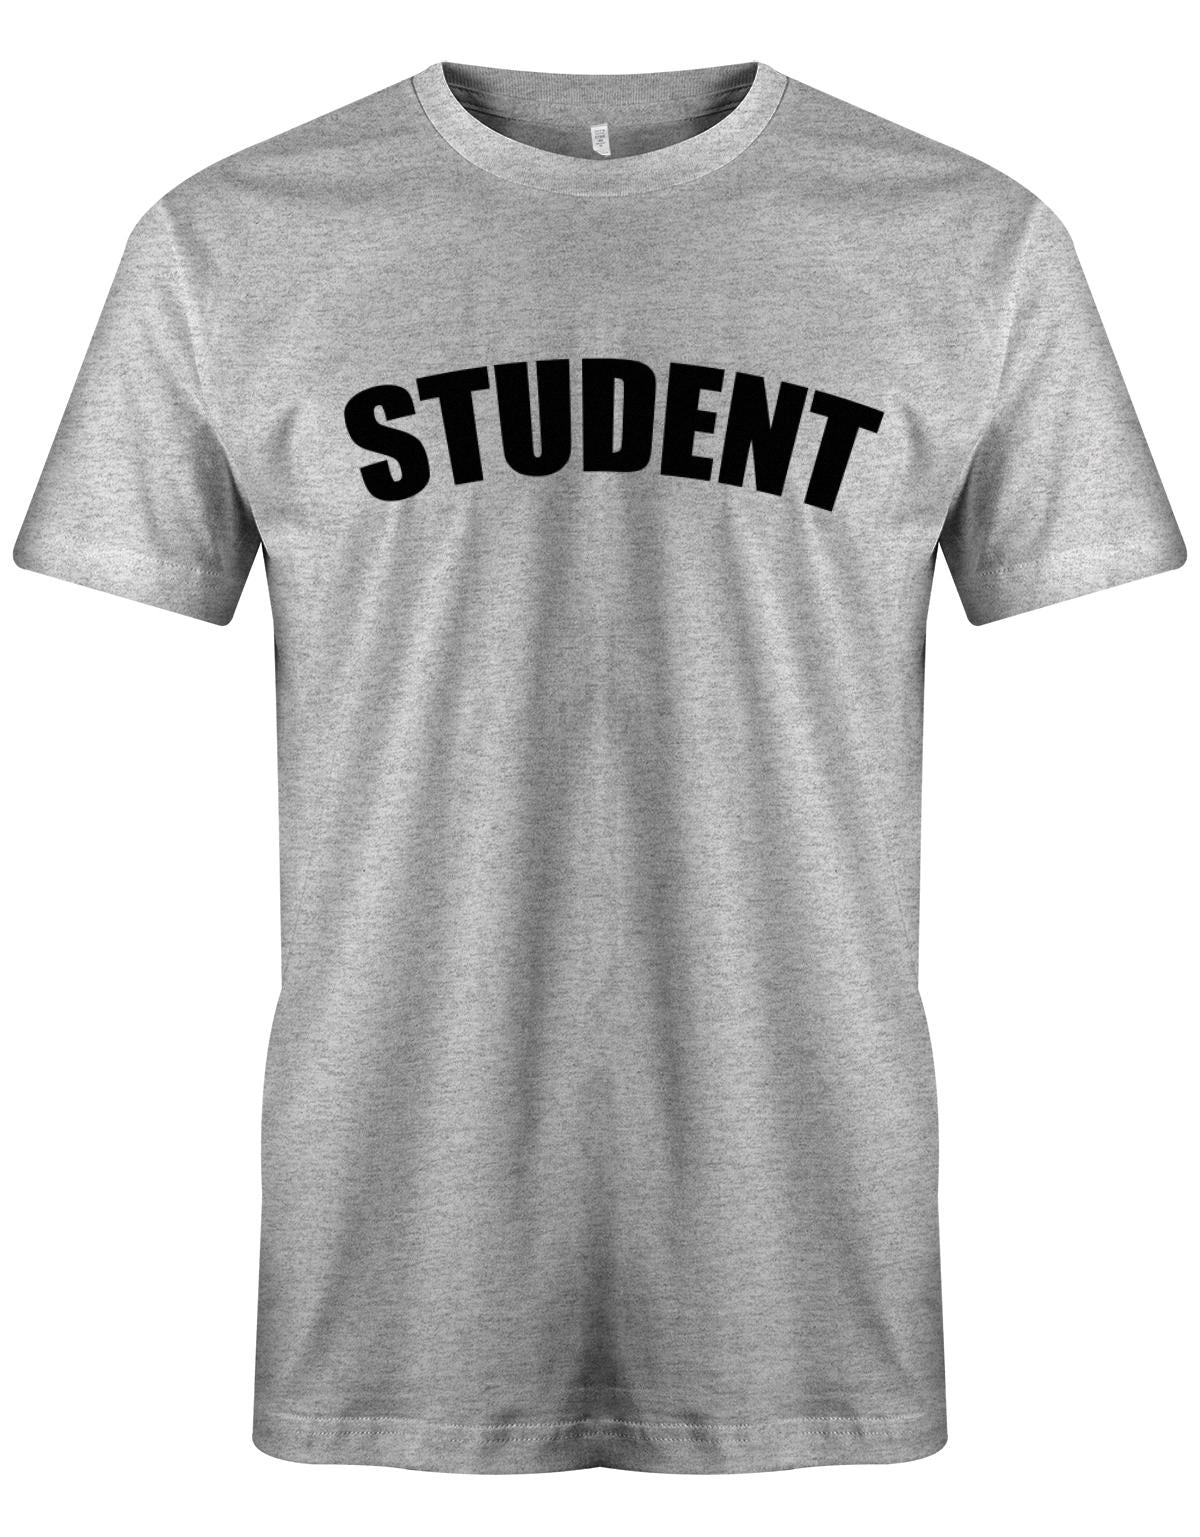 Student-Schrift-Herren-Shirt-Grau